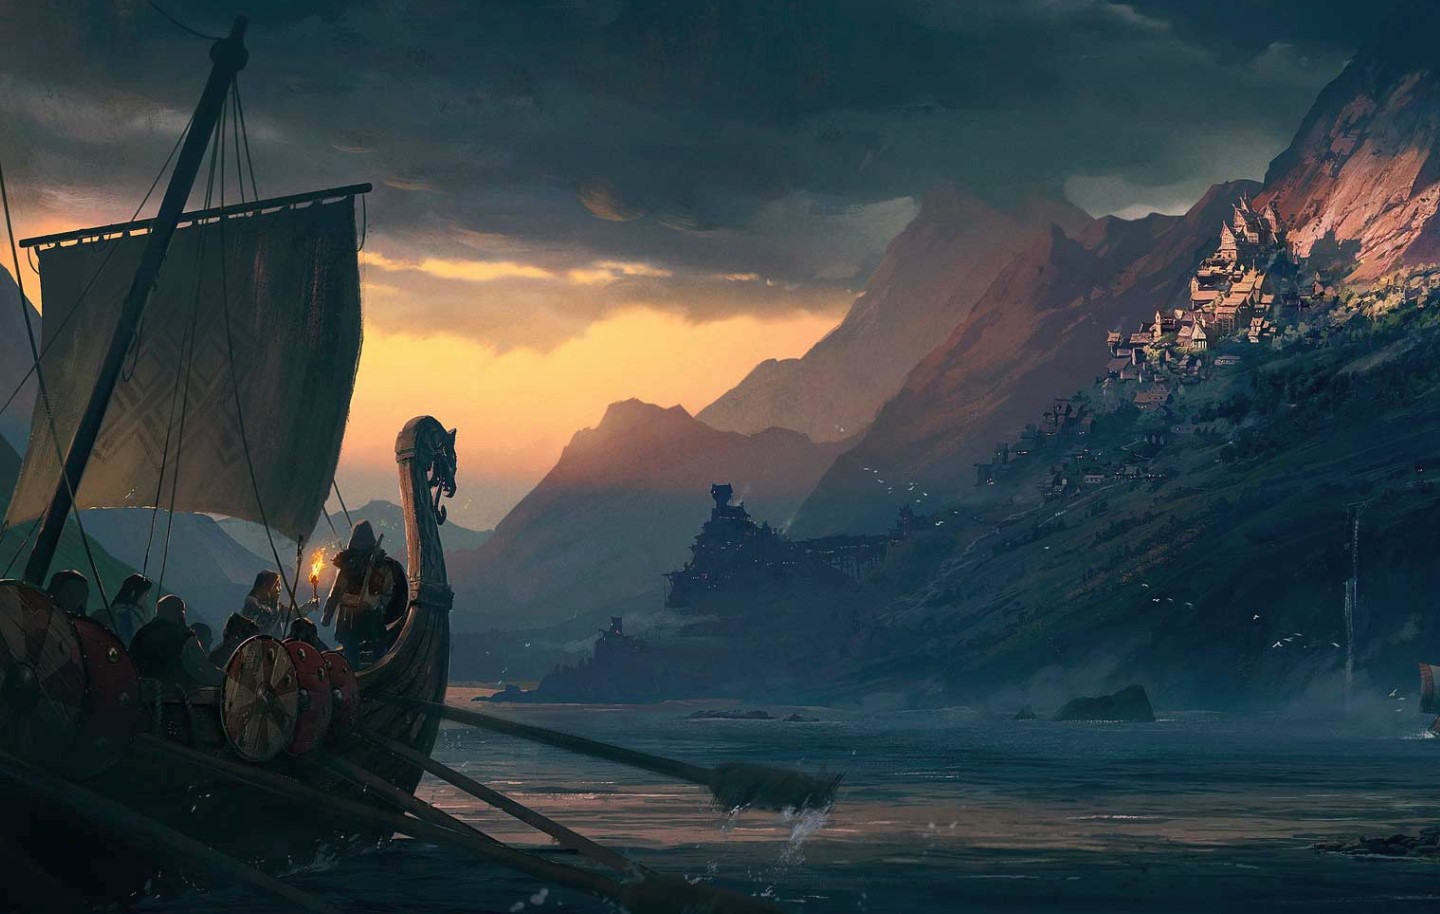 El próximo Assassin’s Creed podría ser sobre Vikingos: la extraña pista que encontró un jugador en The Division 2